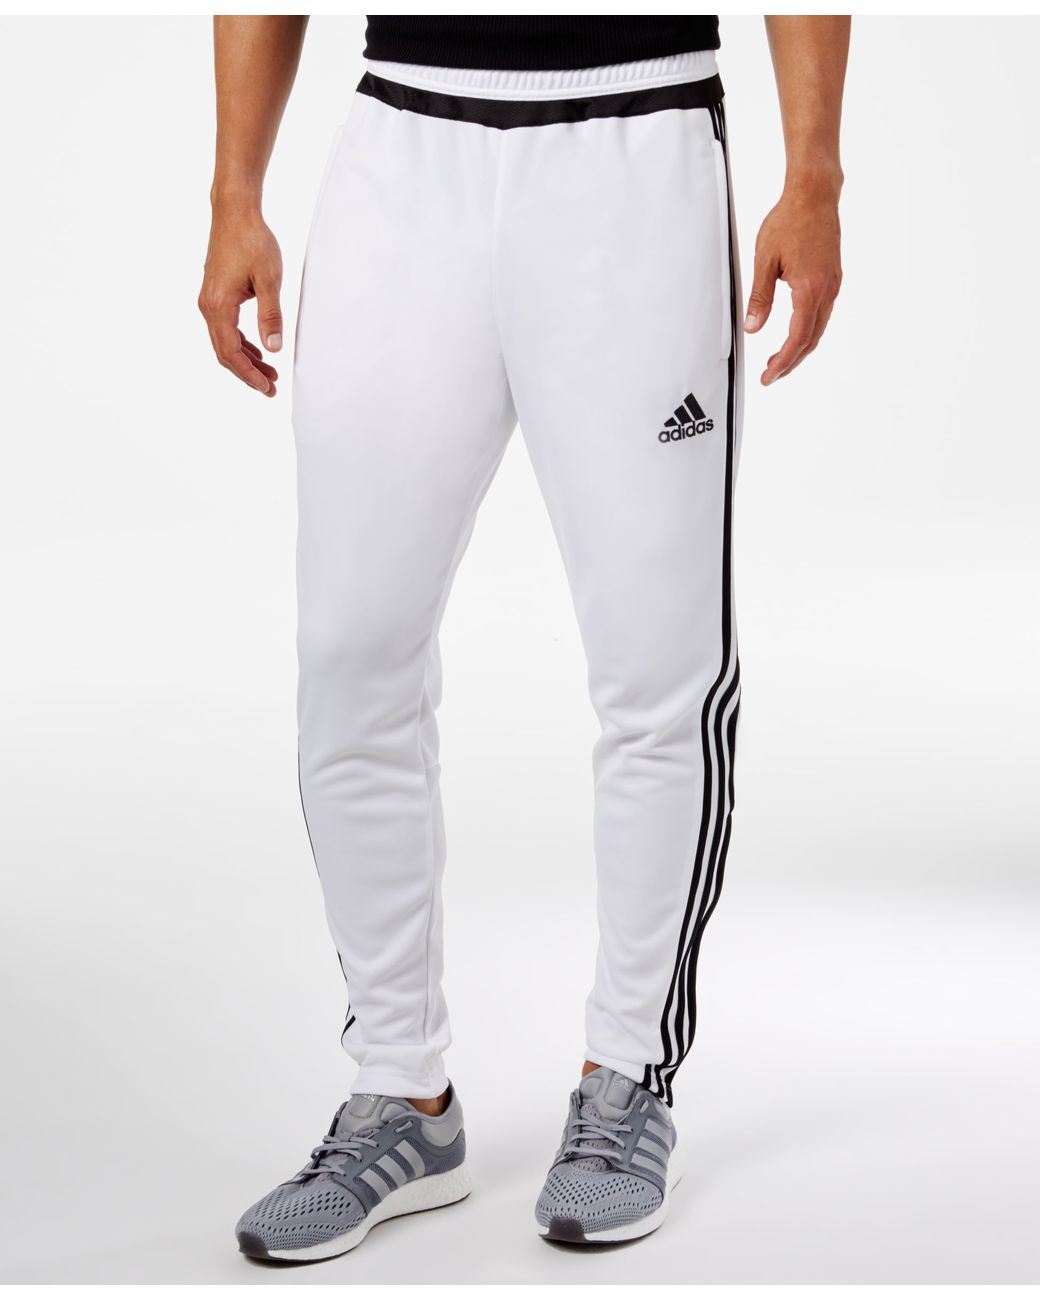 adidas Originals Men's 15 Training Pants White Men | Lyst